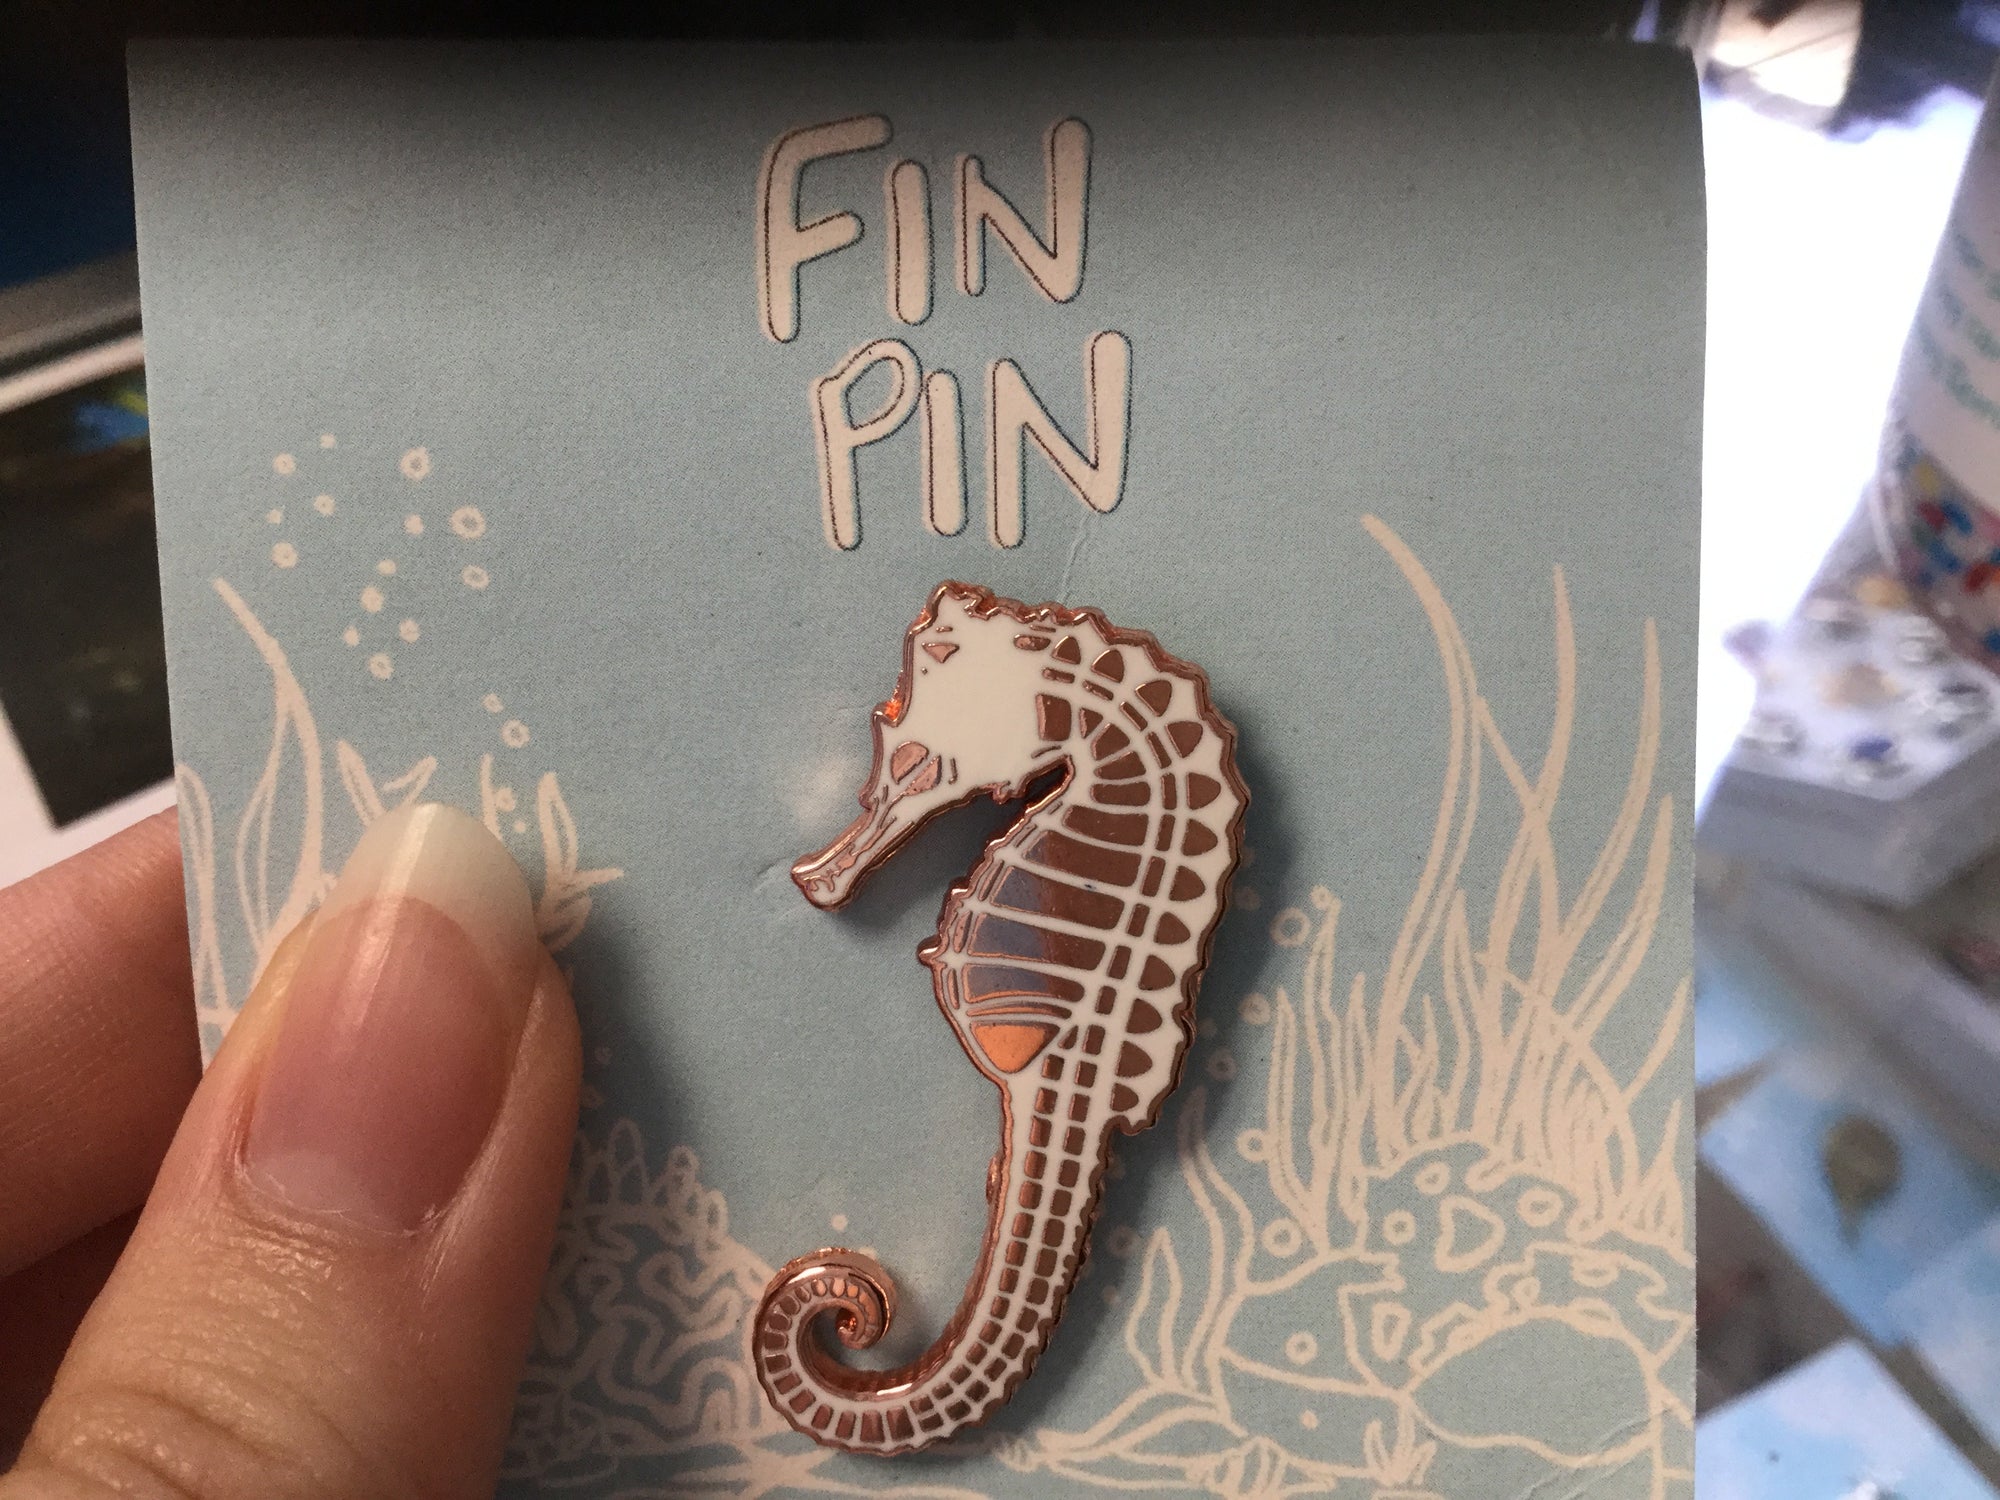 Fin pin seahorse